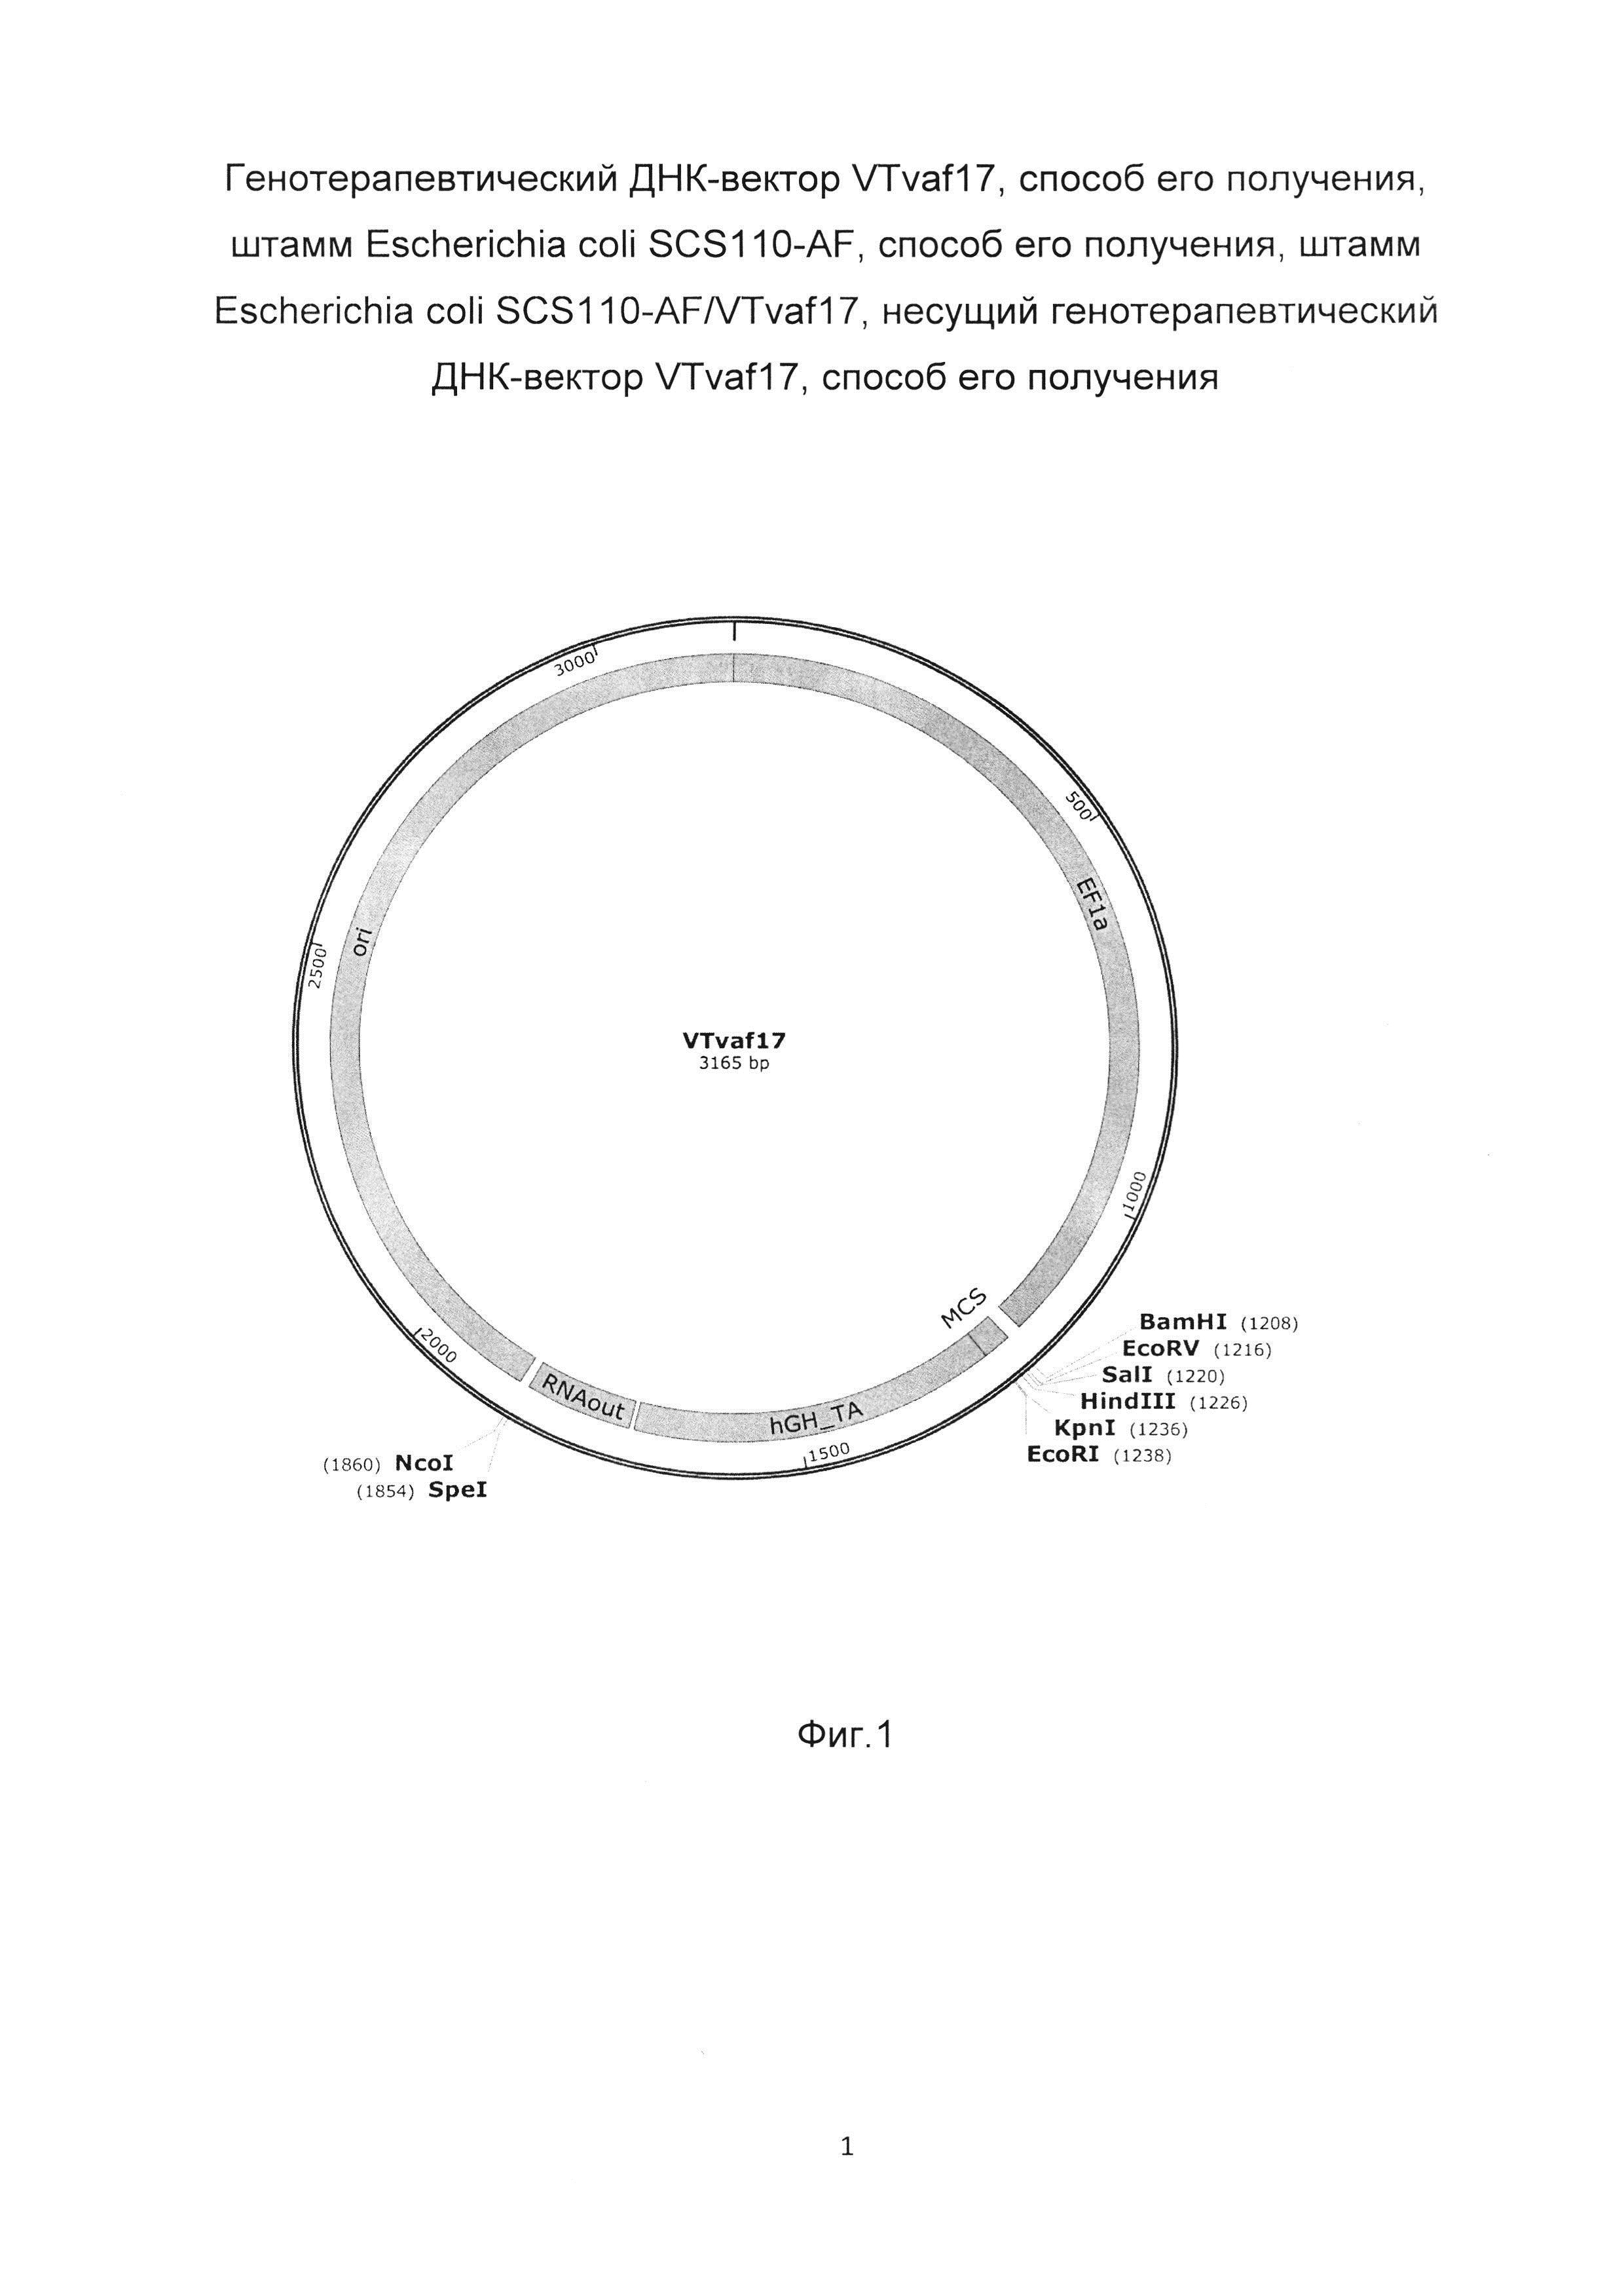 Генотерапевтический ДНК-вектор VTvaf17, способ его получения, штамм Escherichia coli SCS110-AF, способ его получения, штамм Escherichia coli SCS110-AF/VTvaf17, несущий генотерапевтический ДНК-вектор VTvaf17, способ его получения